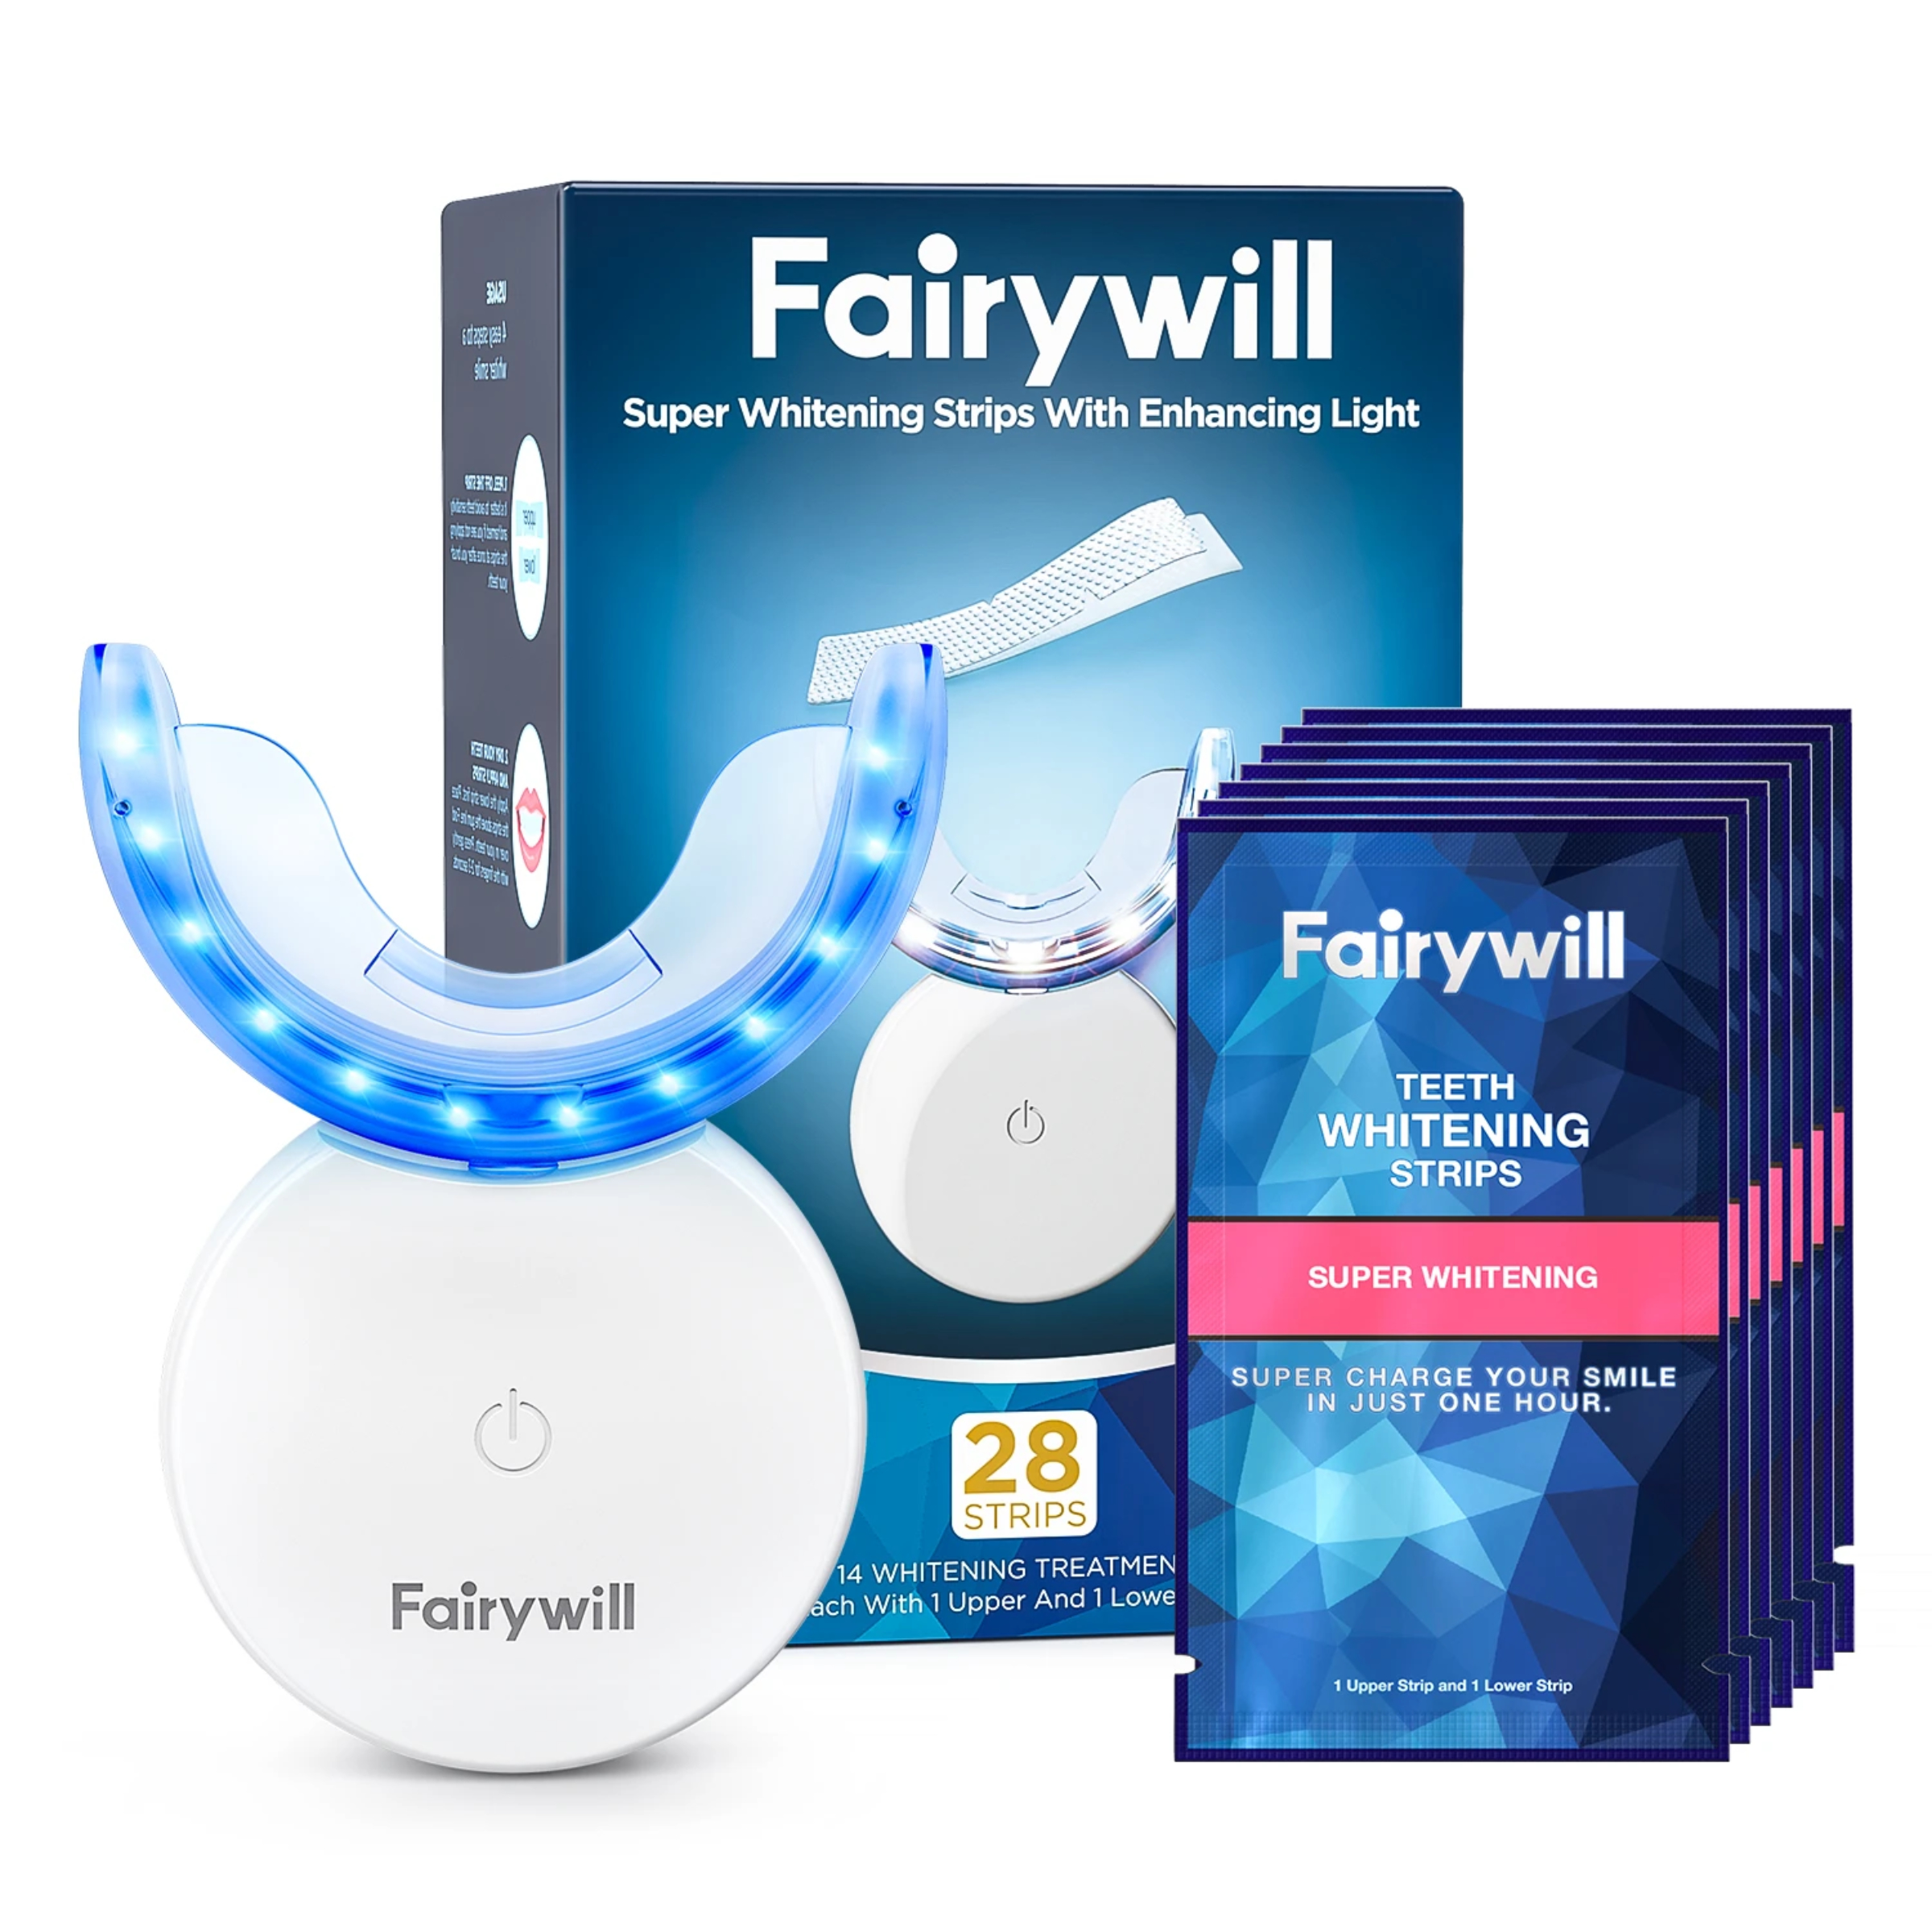 Máy làm trắng răng Fairywill FW 106, cho răng trắng sáng tự nhiên chỉ sau 14 lần sử dụng. Đi kèm thước đo độ sáng răng